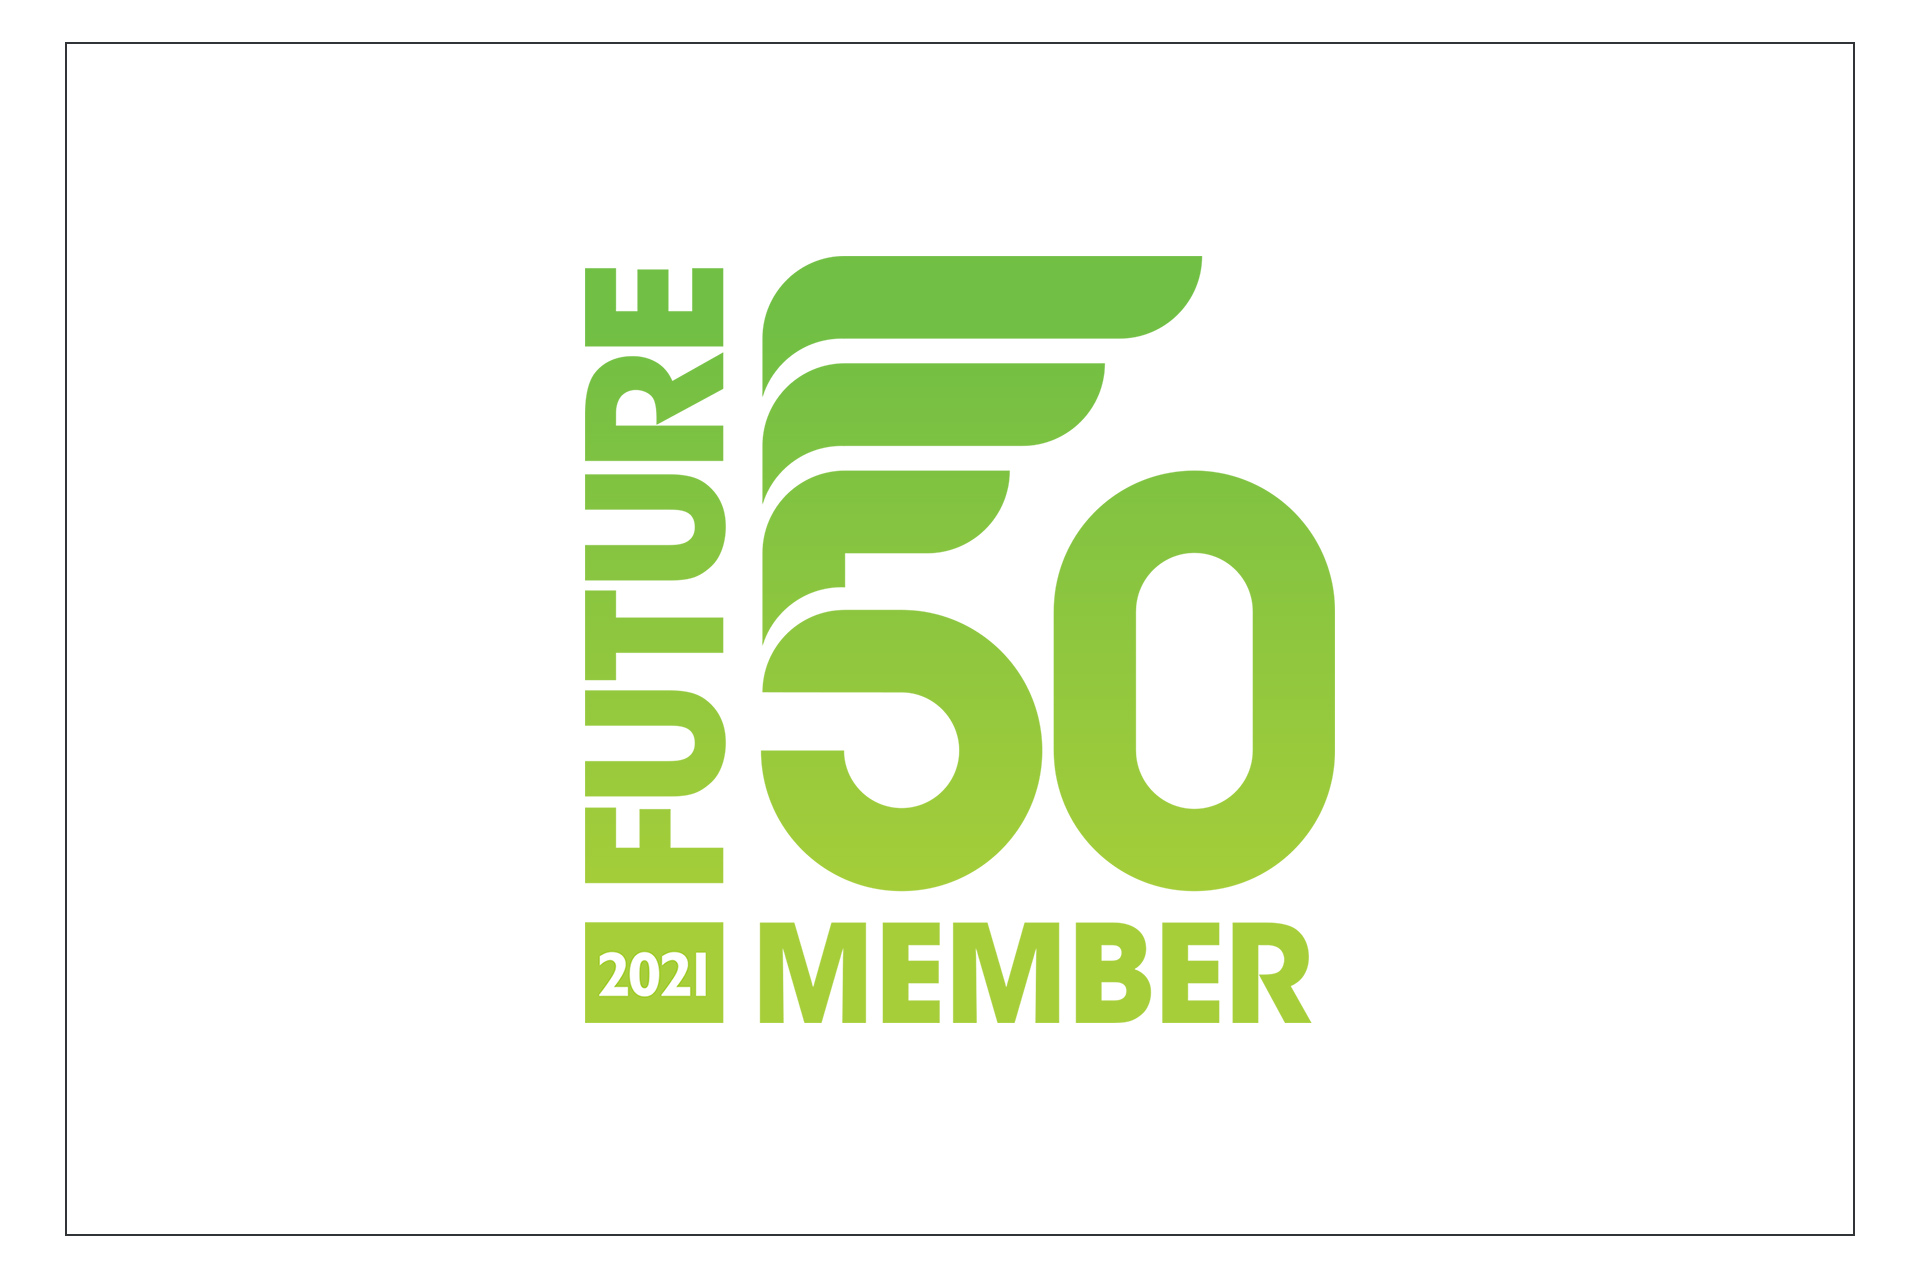 Future 50 Member